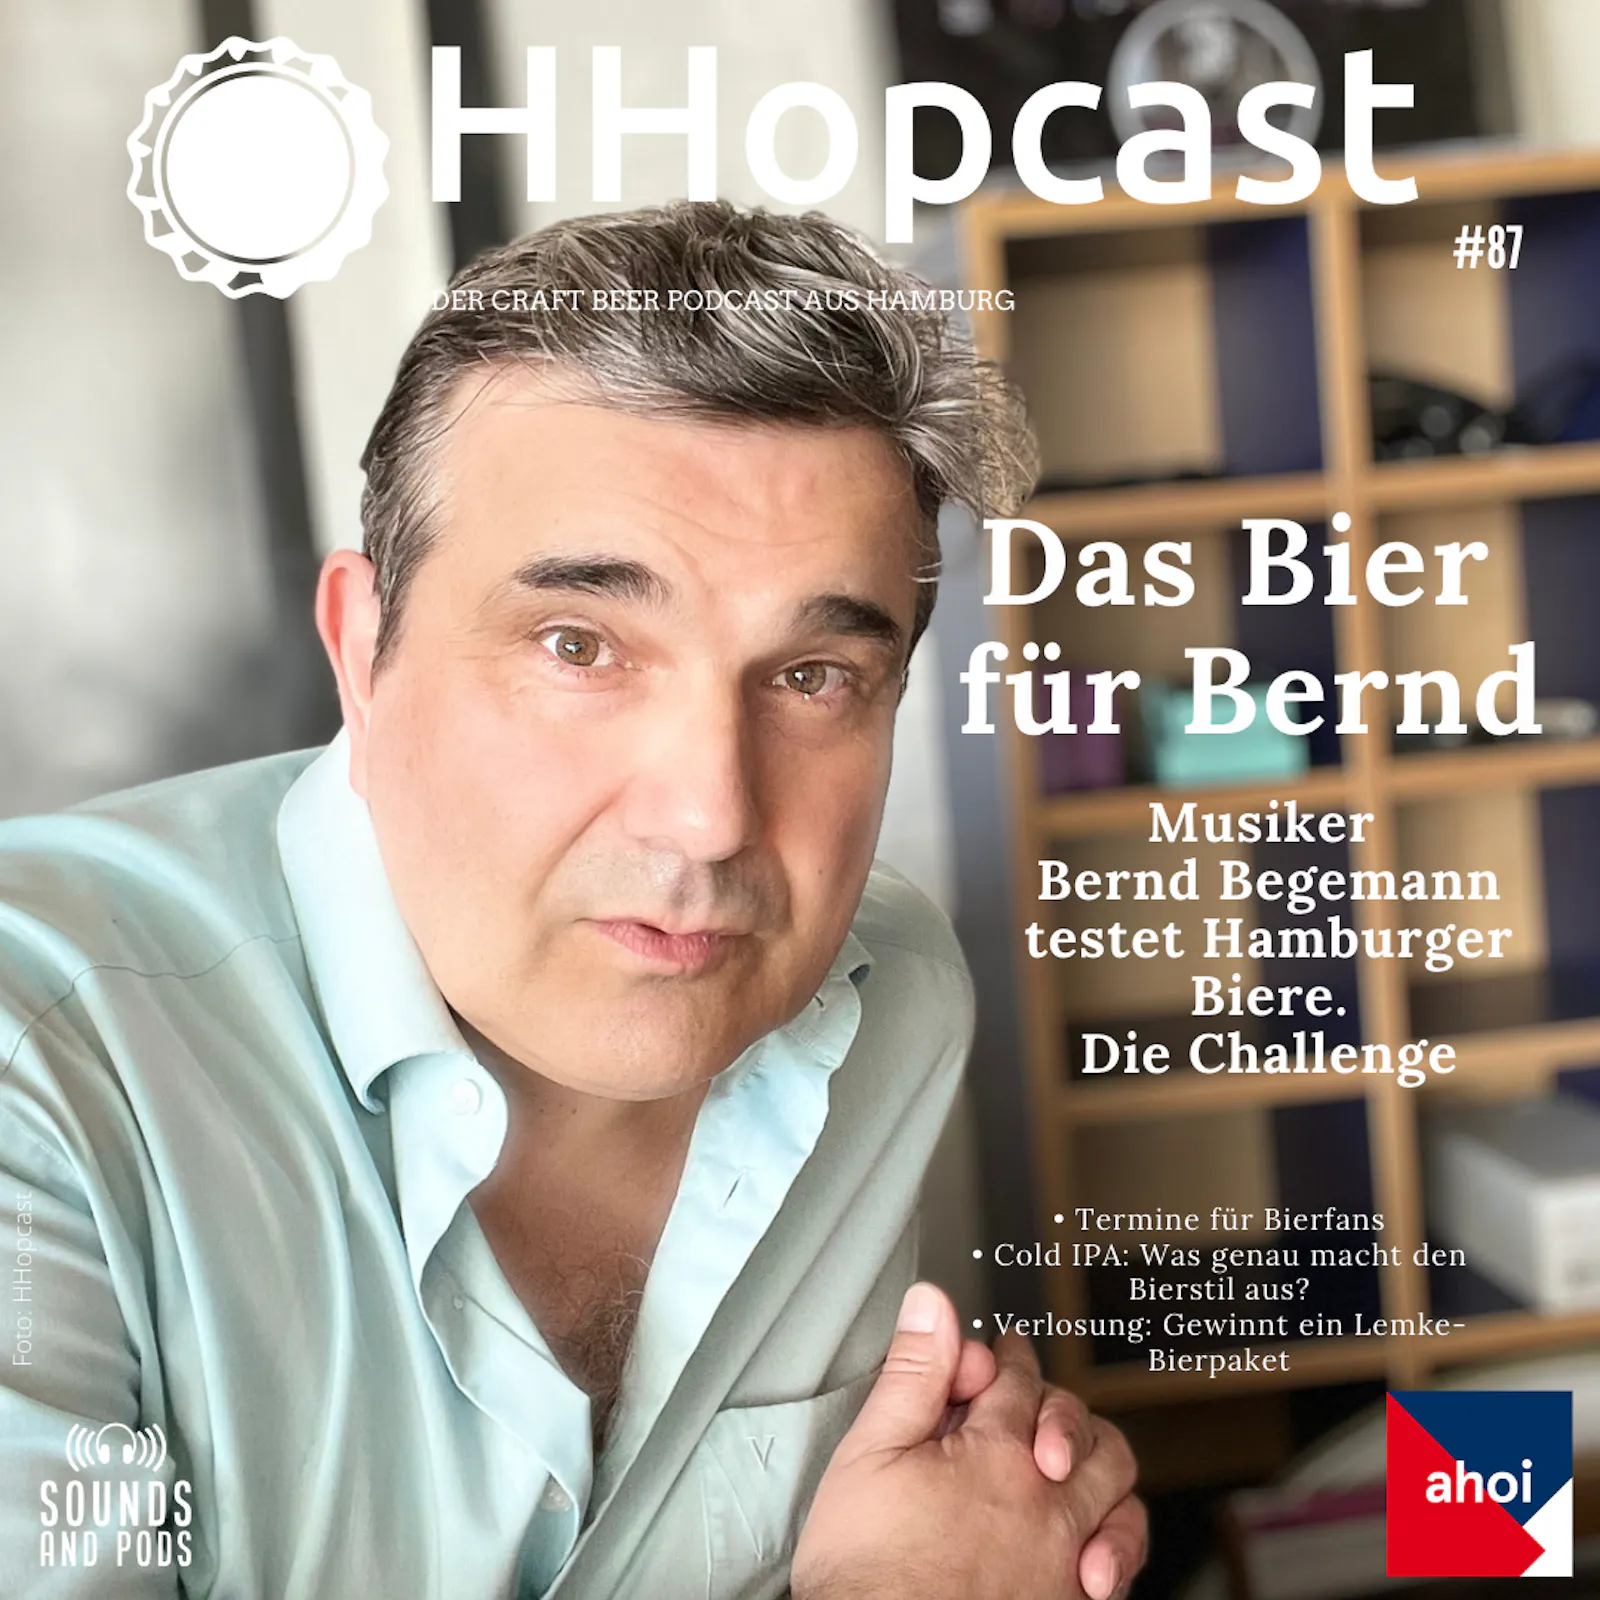 Bernd Begemann auf dem Podcast-Cover von HHopcast, dem Bierpodcast aus Hamburg